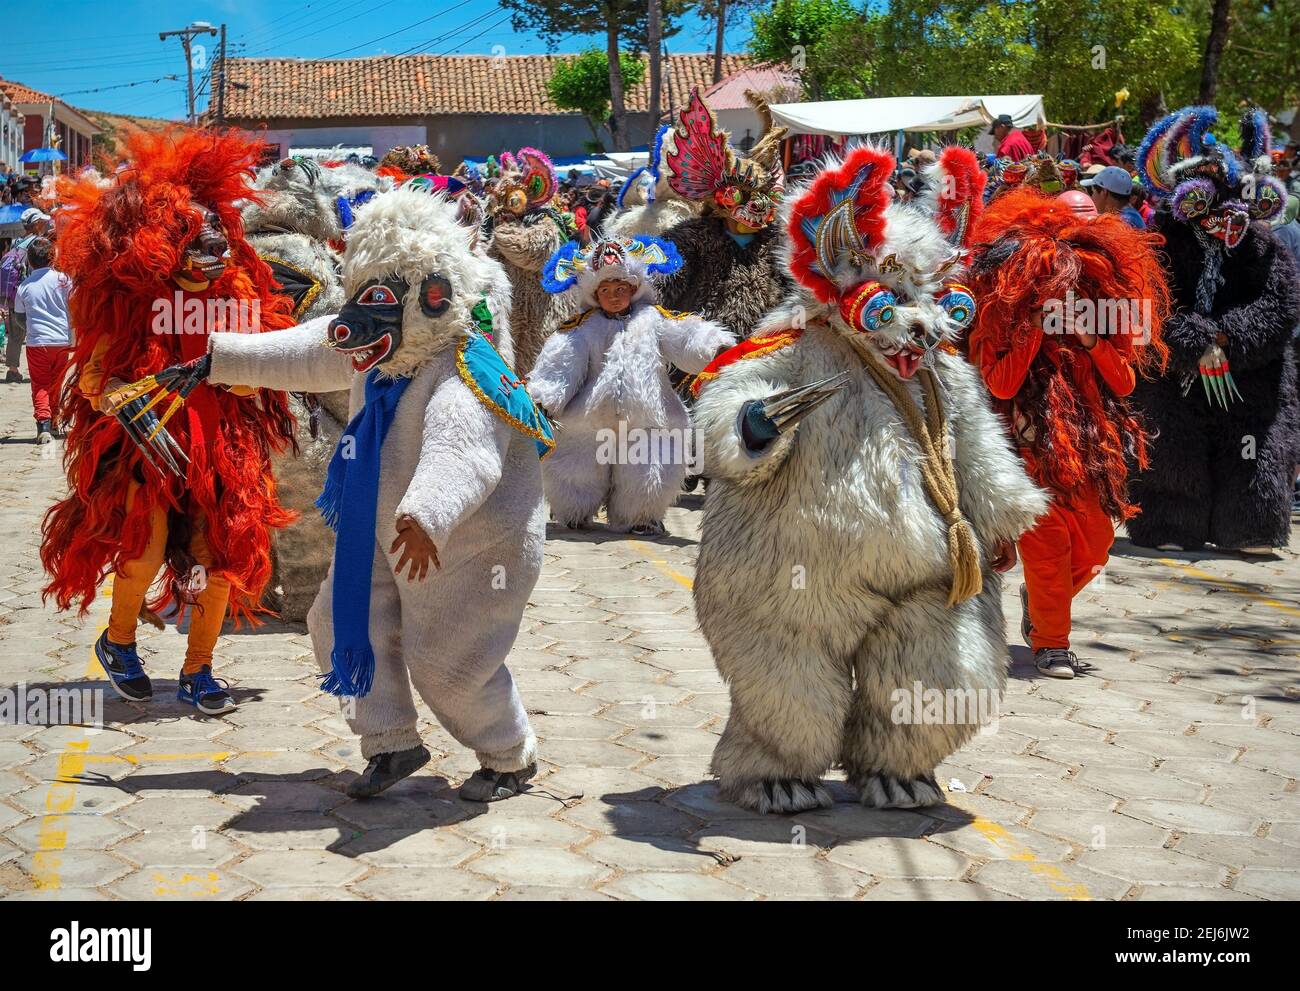 Costumi ornati di orso in una sfilata religiosa carnevale di strada con danze, Tarabuco, Bolivia. Foto Stock